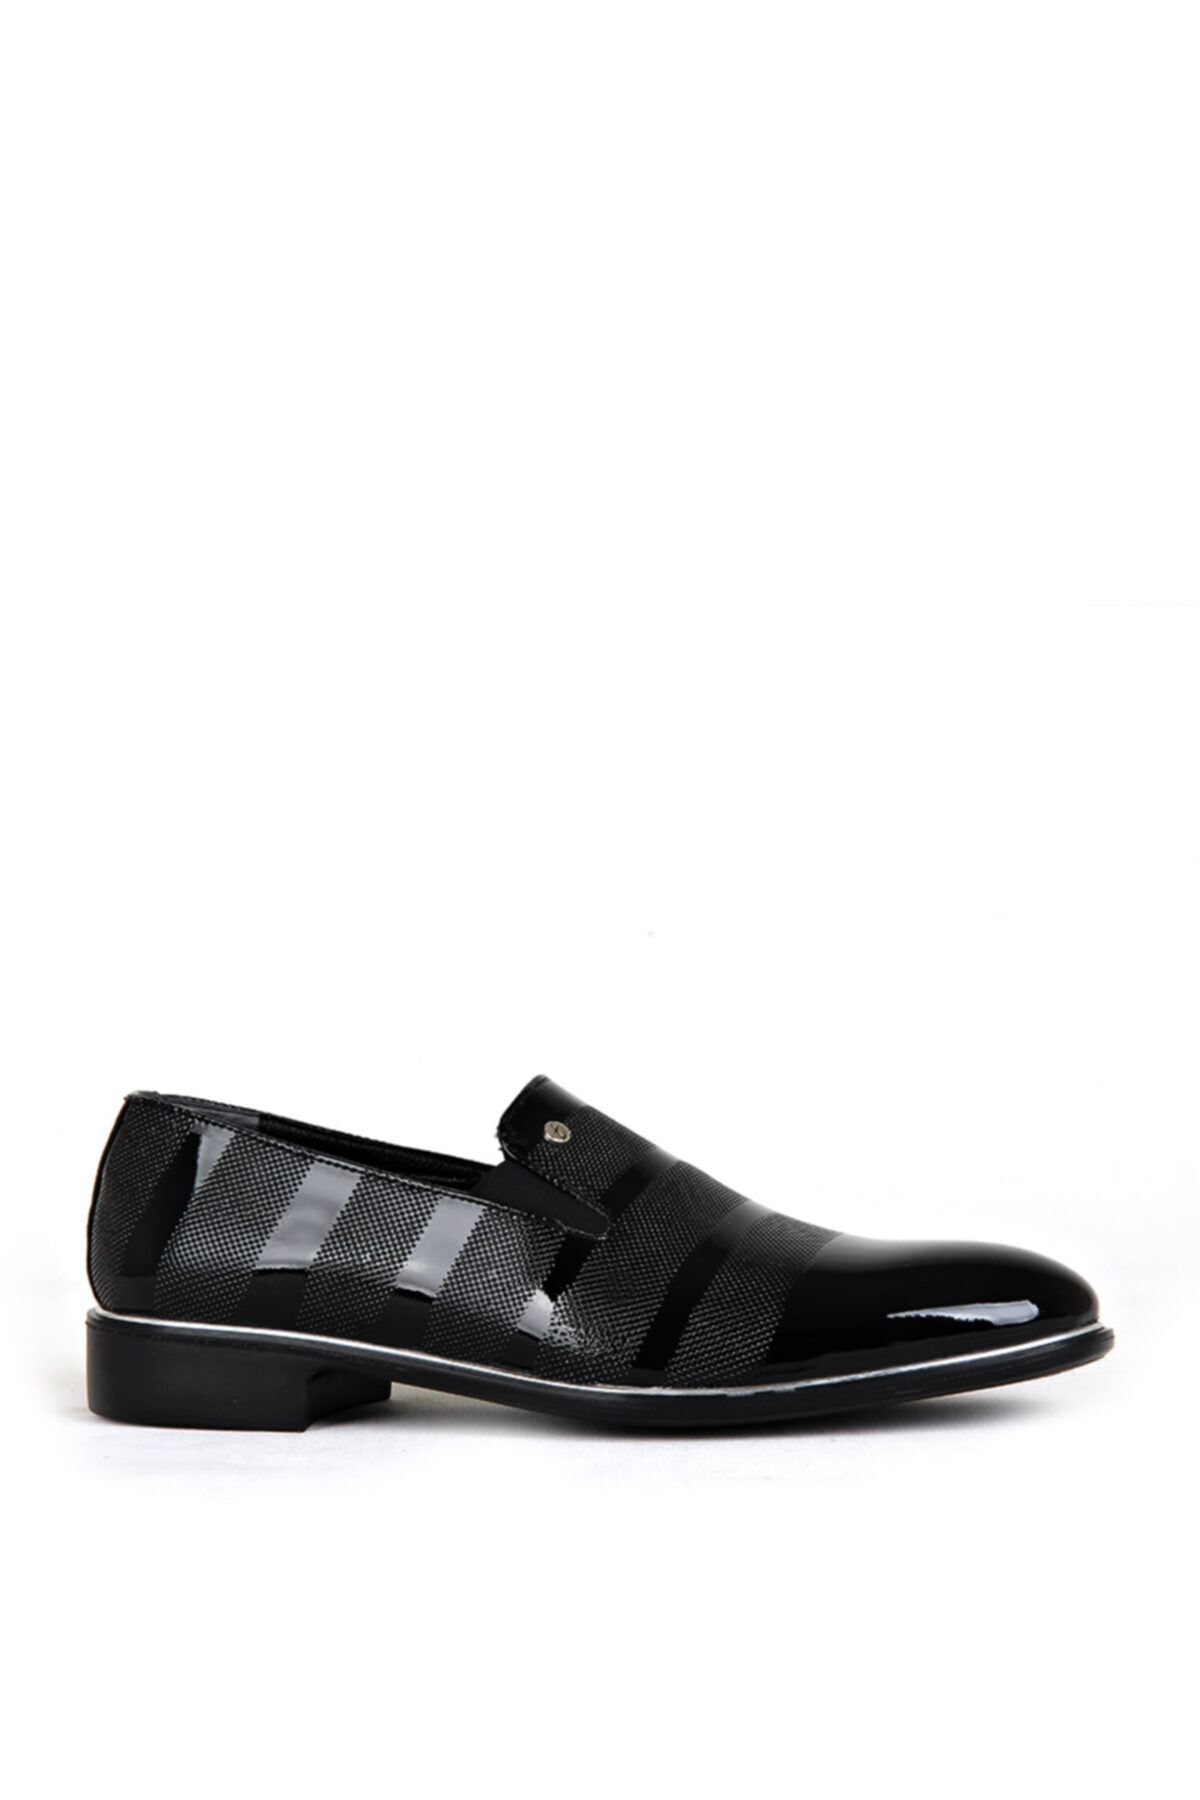 Stil Ayakkabim Erkek Siyah Rugan Klasik Ayakkabı